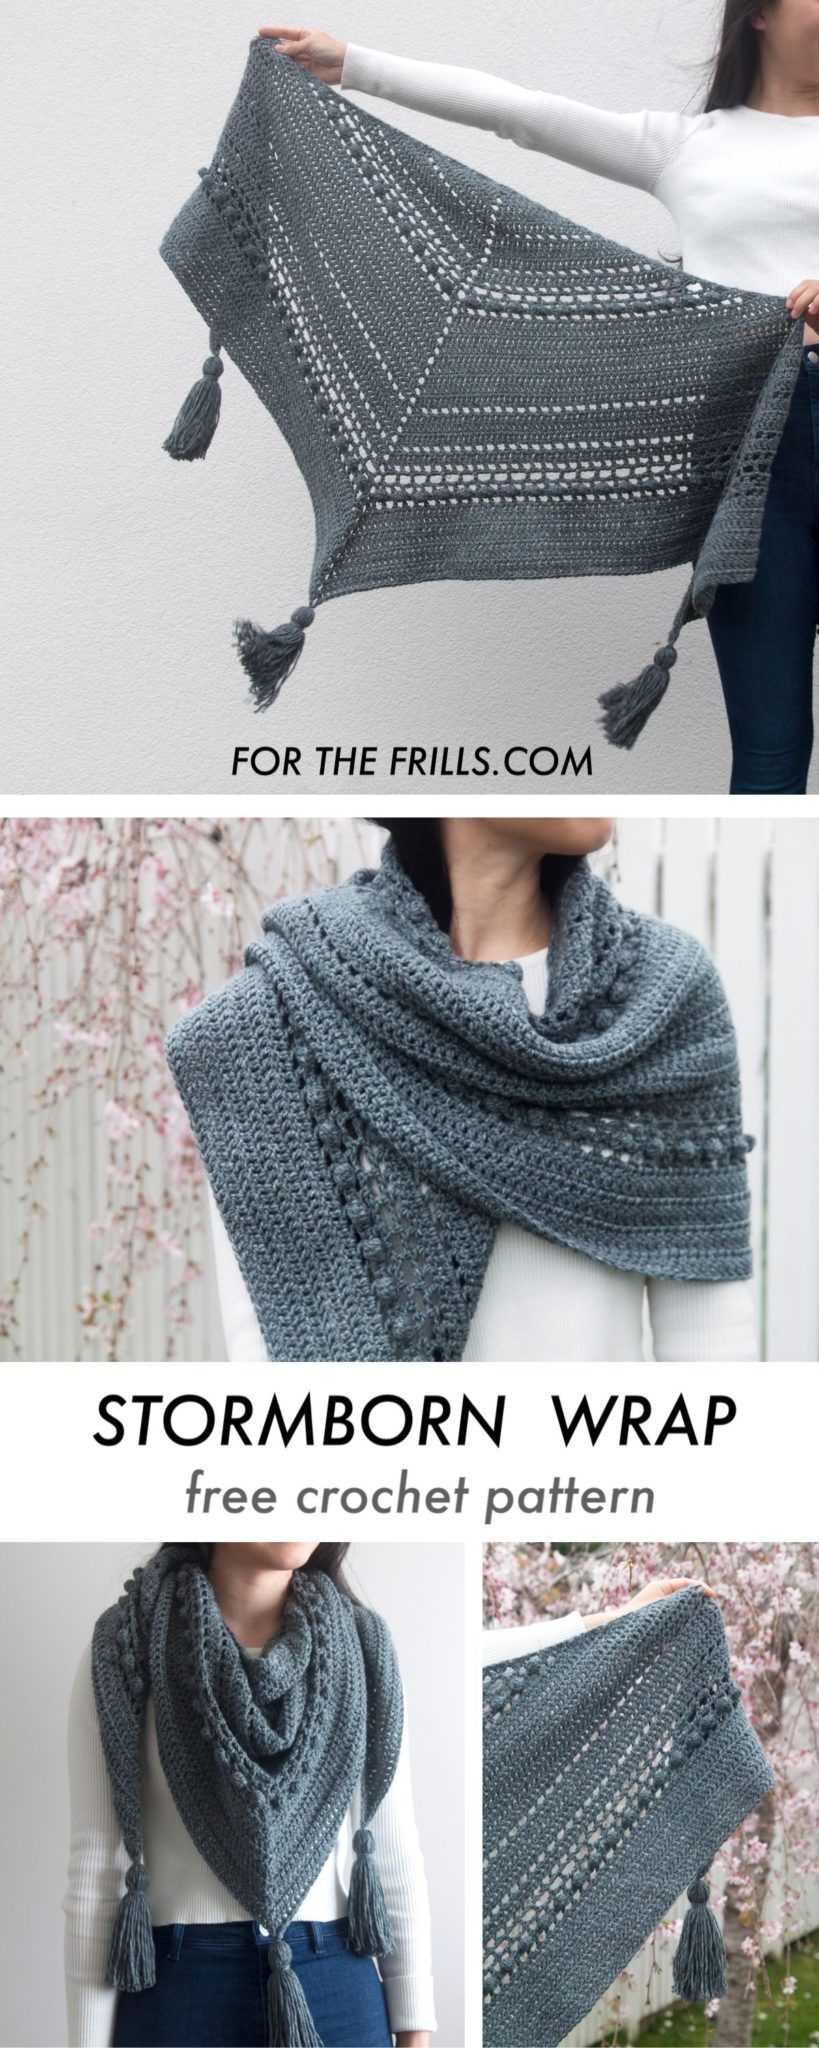 Crochet-Stormborn-Wrap-free-crochet-pattern-for-the.jpg